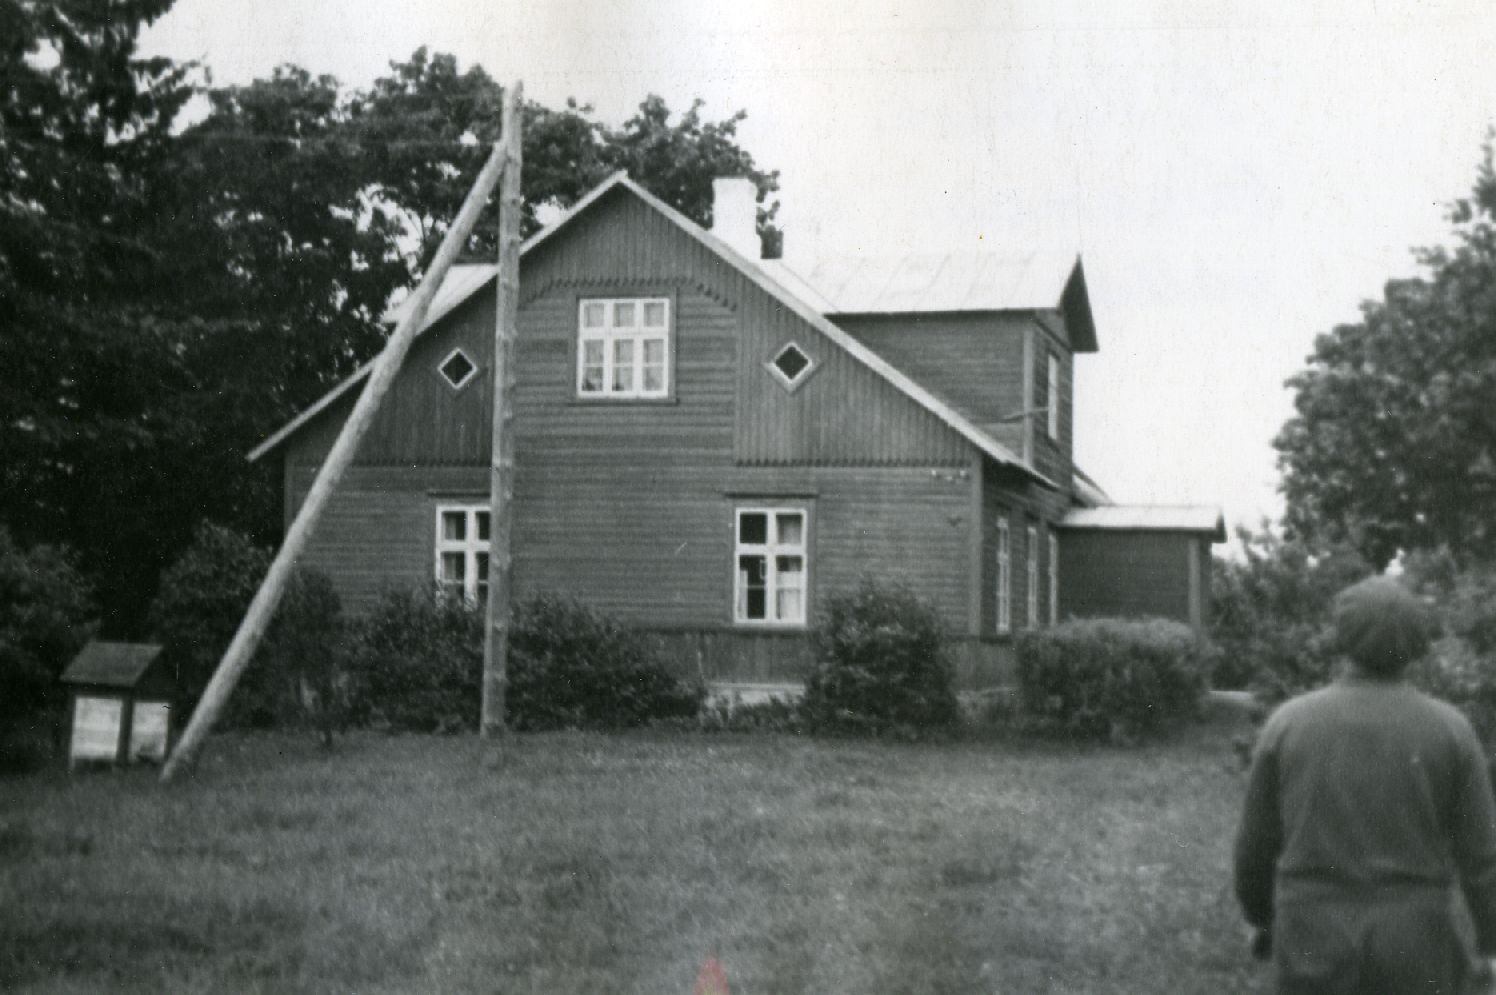 K. Ristikivi's homepage in Pärnamaa (Latest Kilgimetsa) village in Paadremaa municipality. In 1936 the house rebuilt